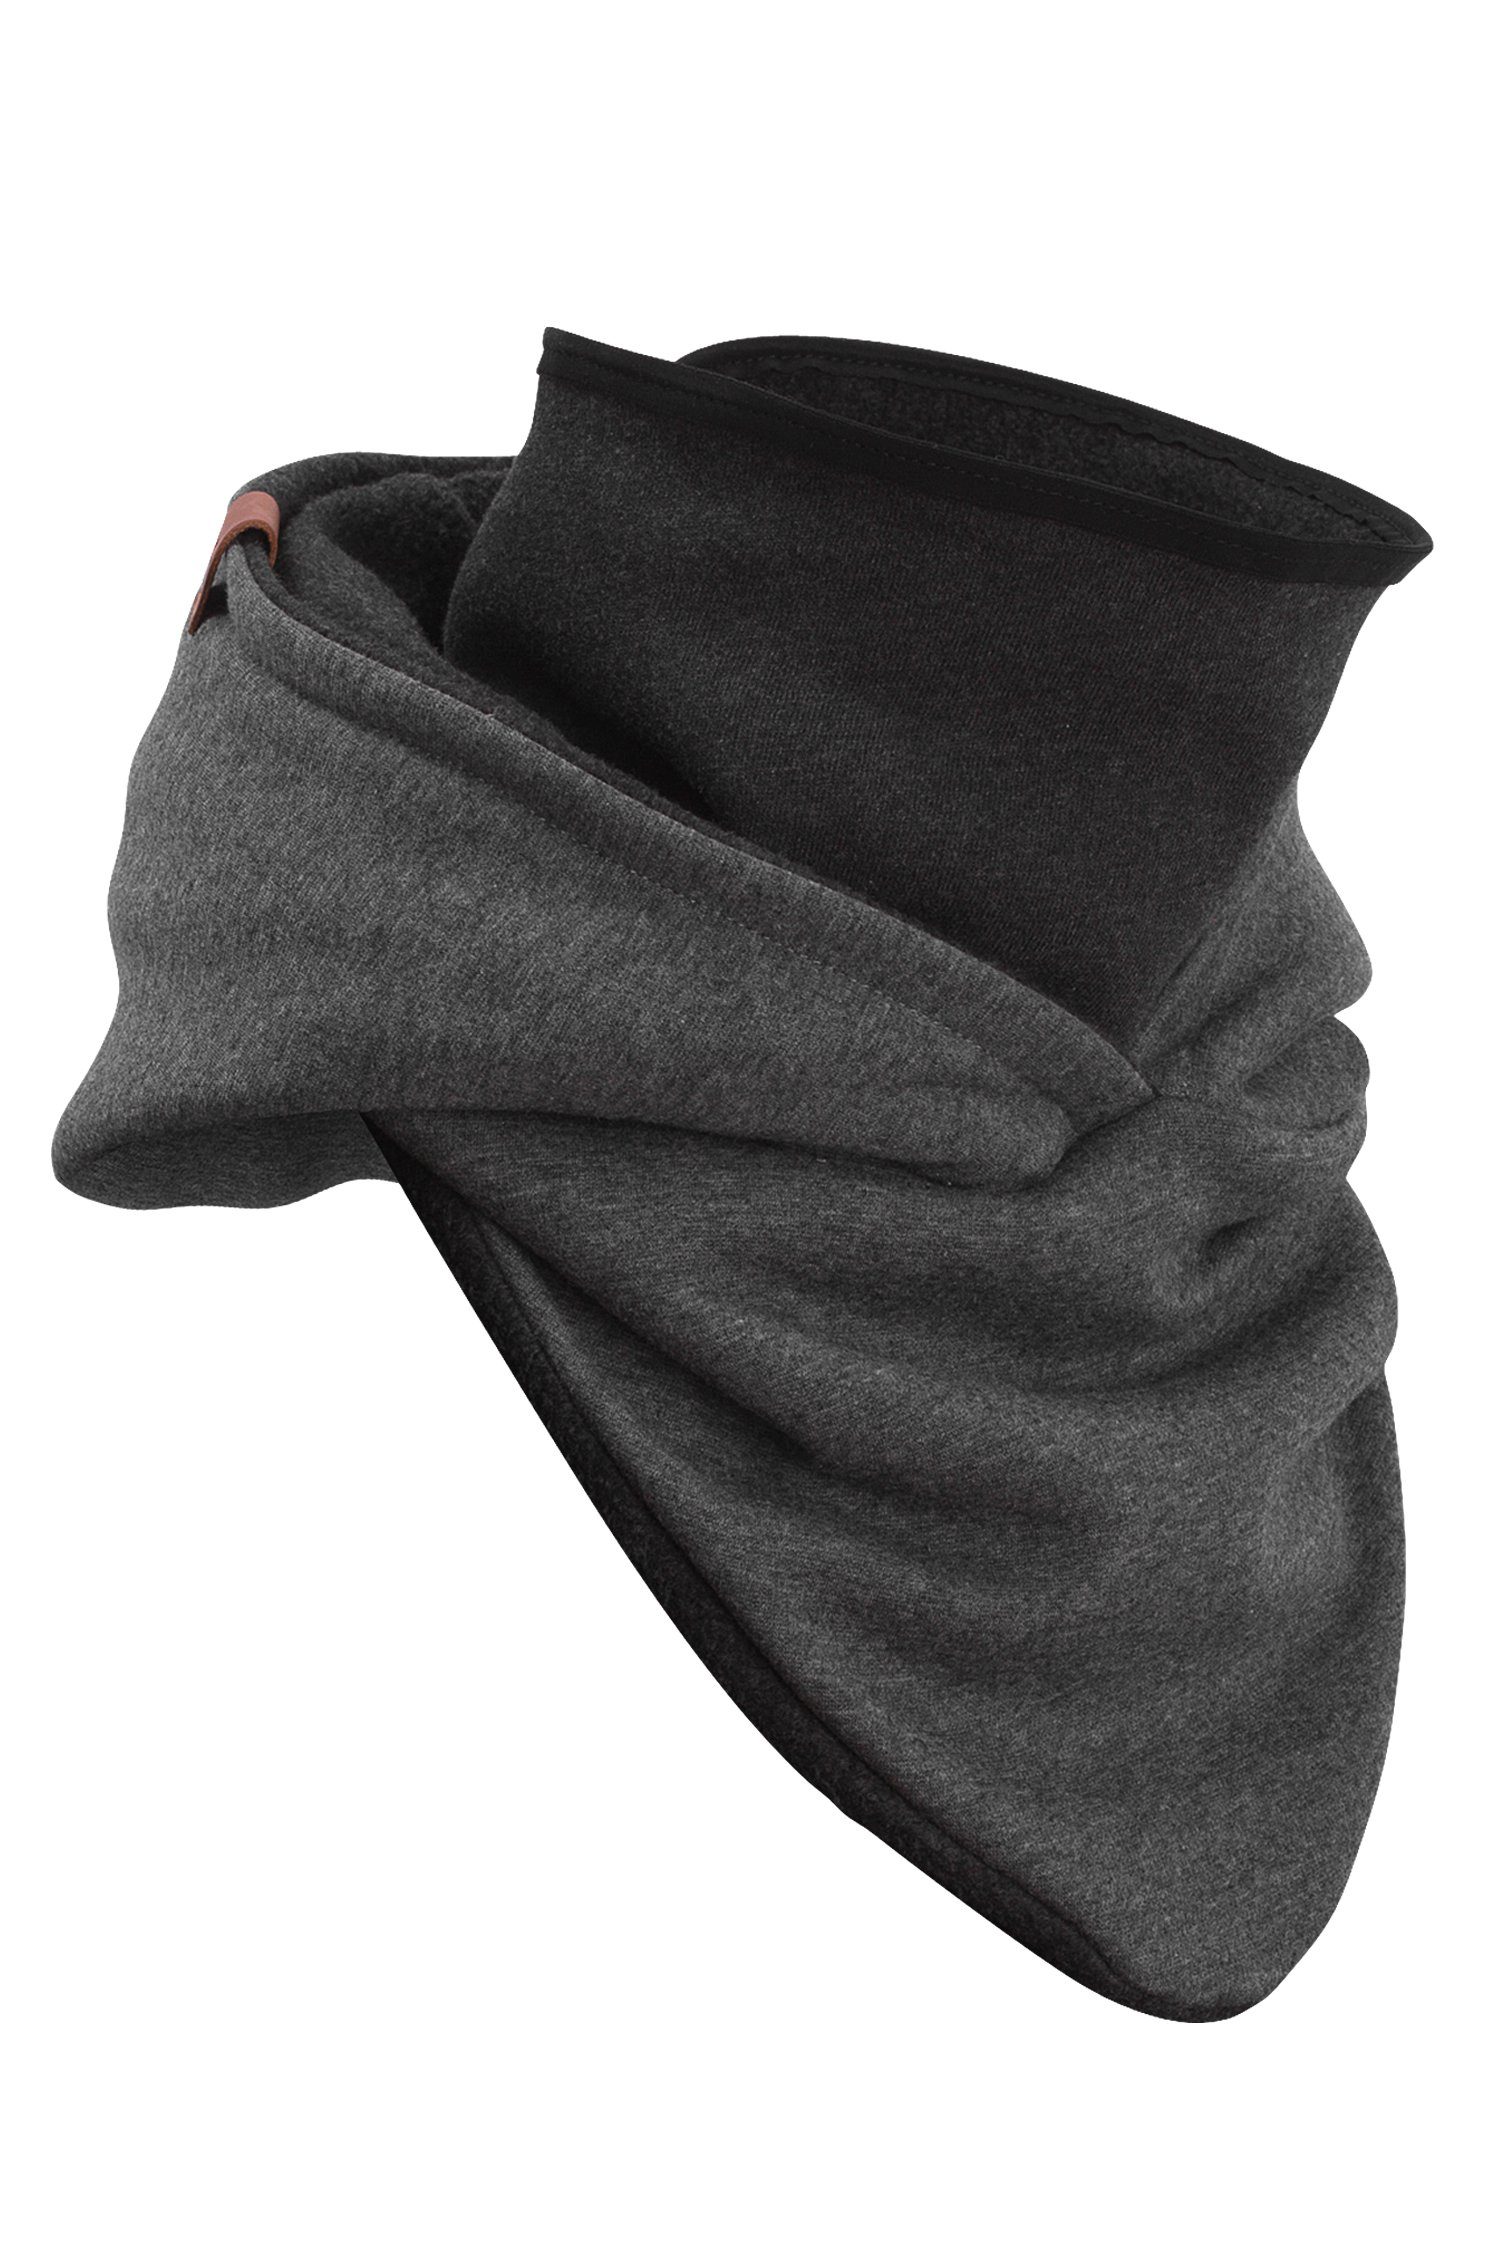 Manufaktur13 Schal Hooded Loop - Kapuzenschal, Schal aus Alpenfleece, mit integriertem Windbreaker Dark Rough